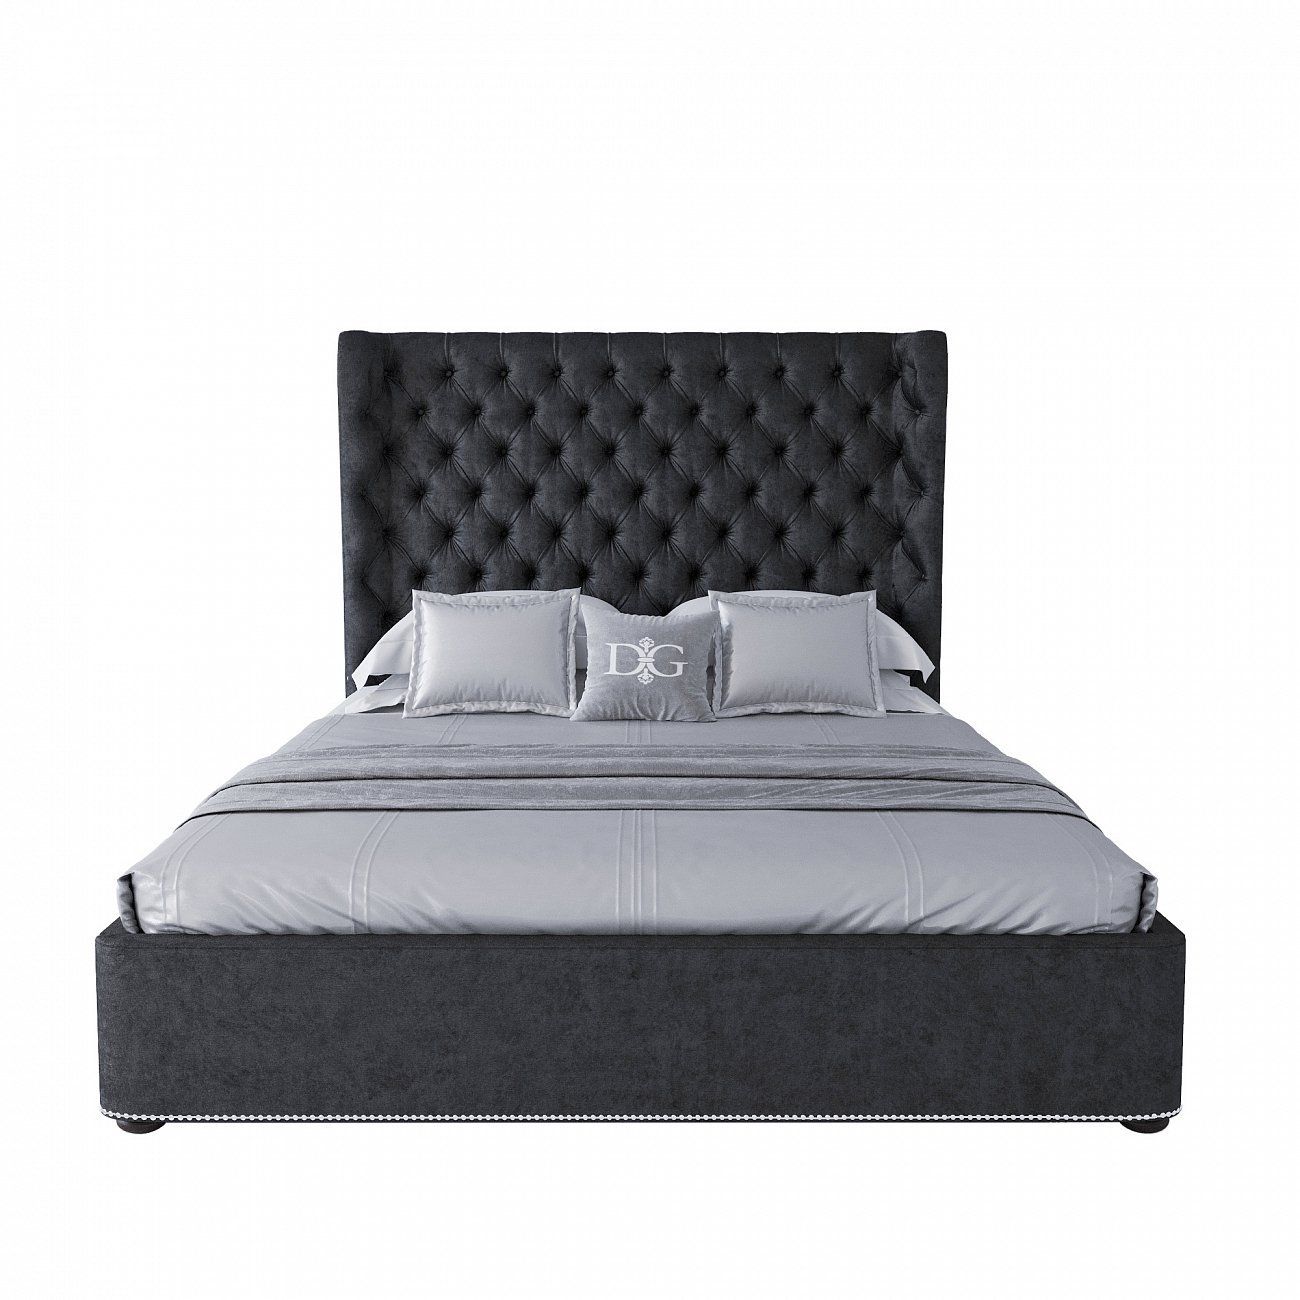 Кровать Henbord двуспальная с мягким изголовьем 160х200 см темно-серая